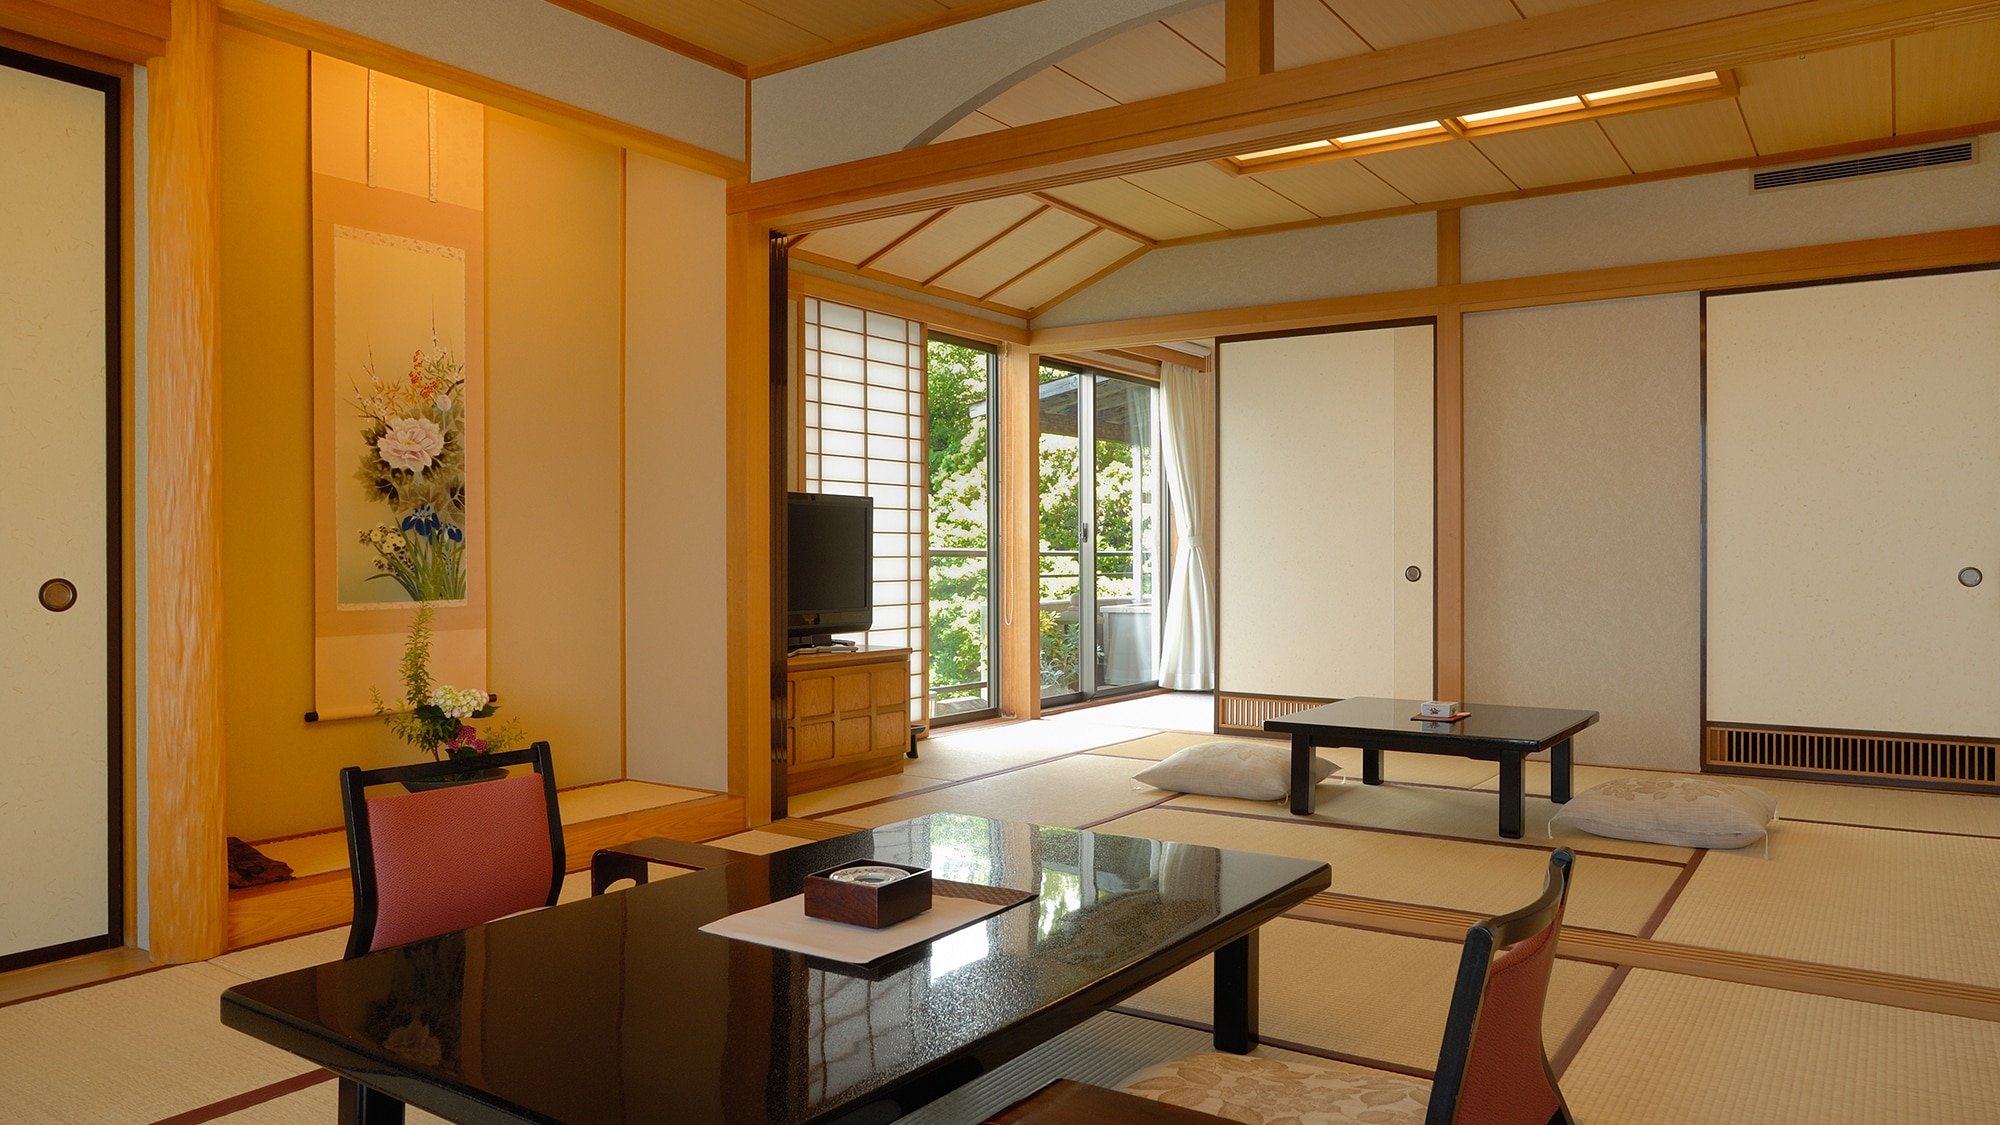 海邊【帶露天/頂樓特別房間】日式房間15張榻榻米+7張榻榻米西式房間-58平方米